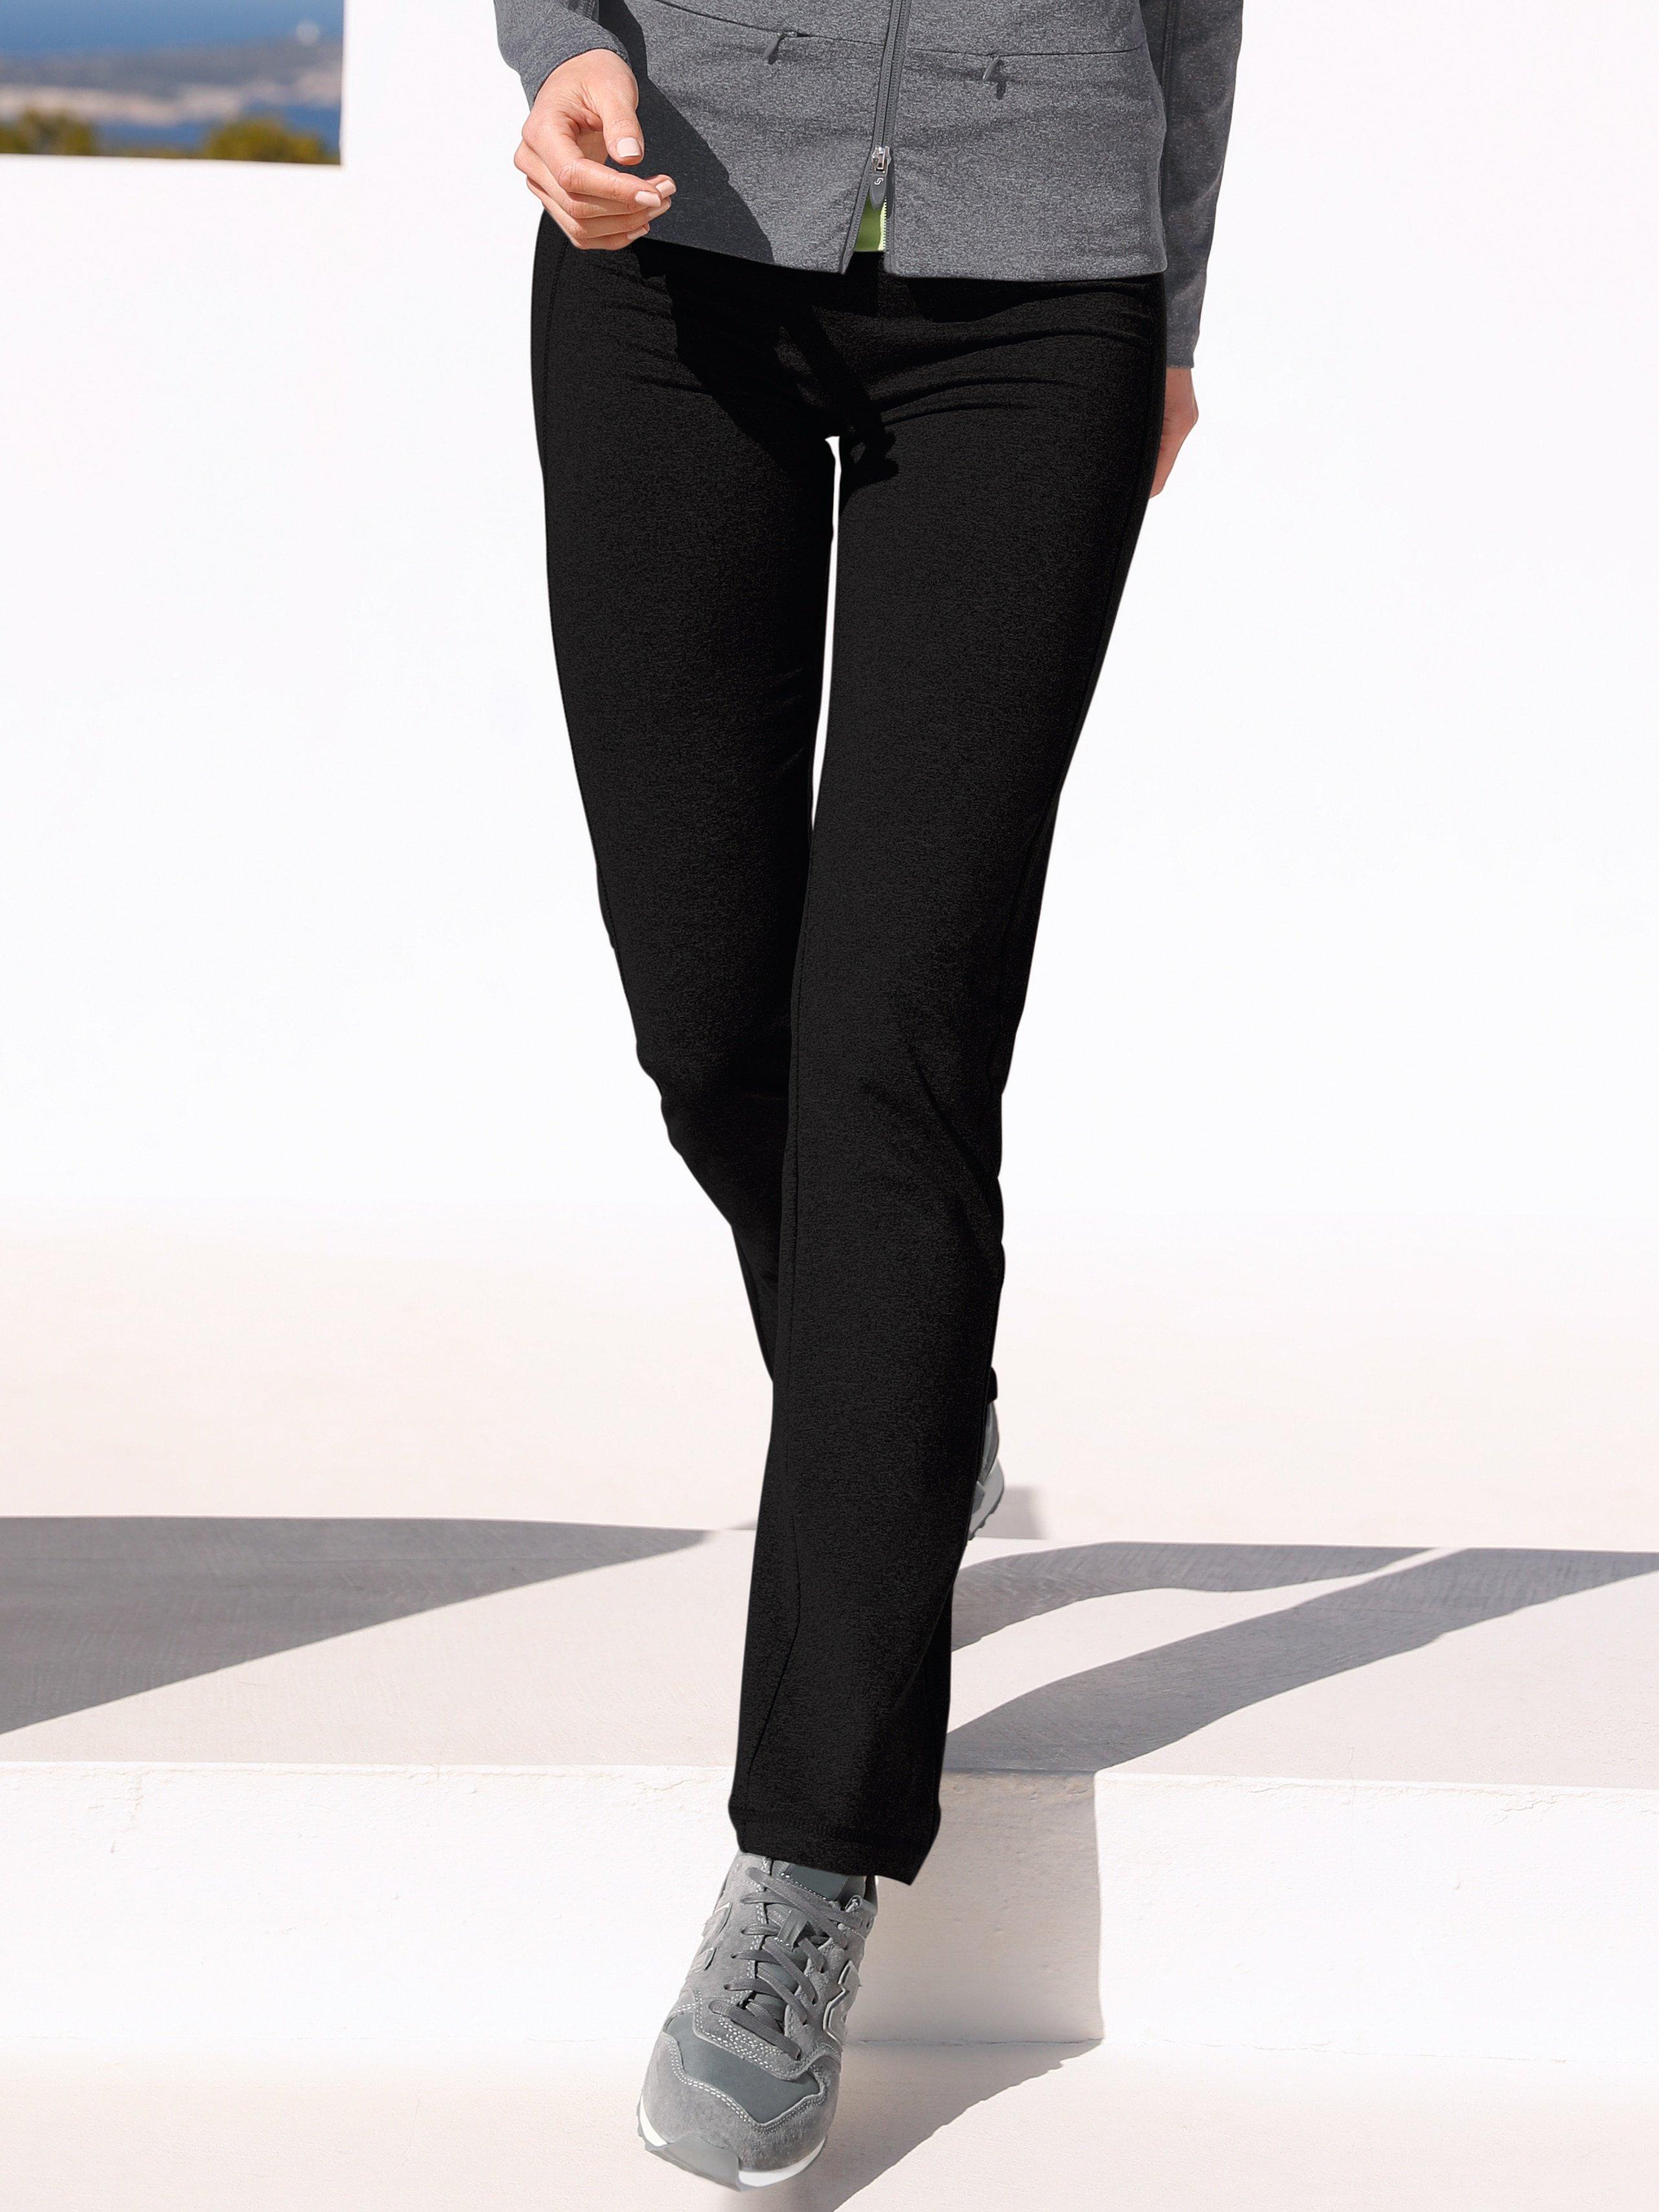 JOY Sportswear - Le pantalon BodyFit, modèle Ester